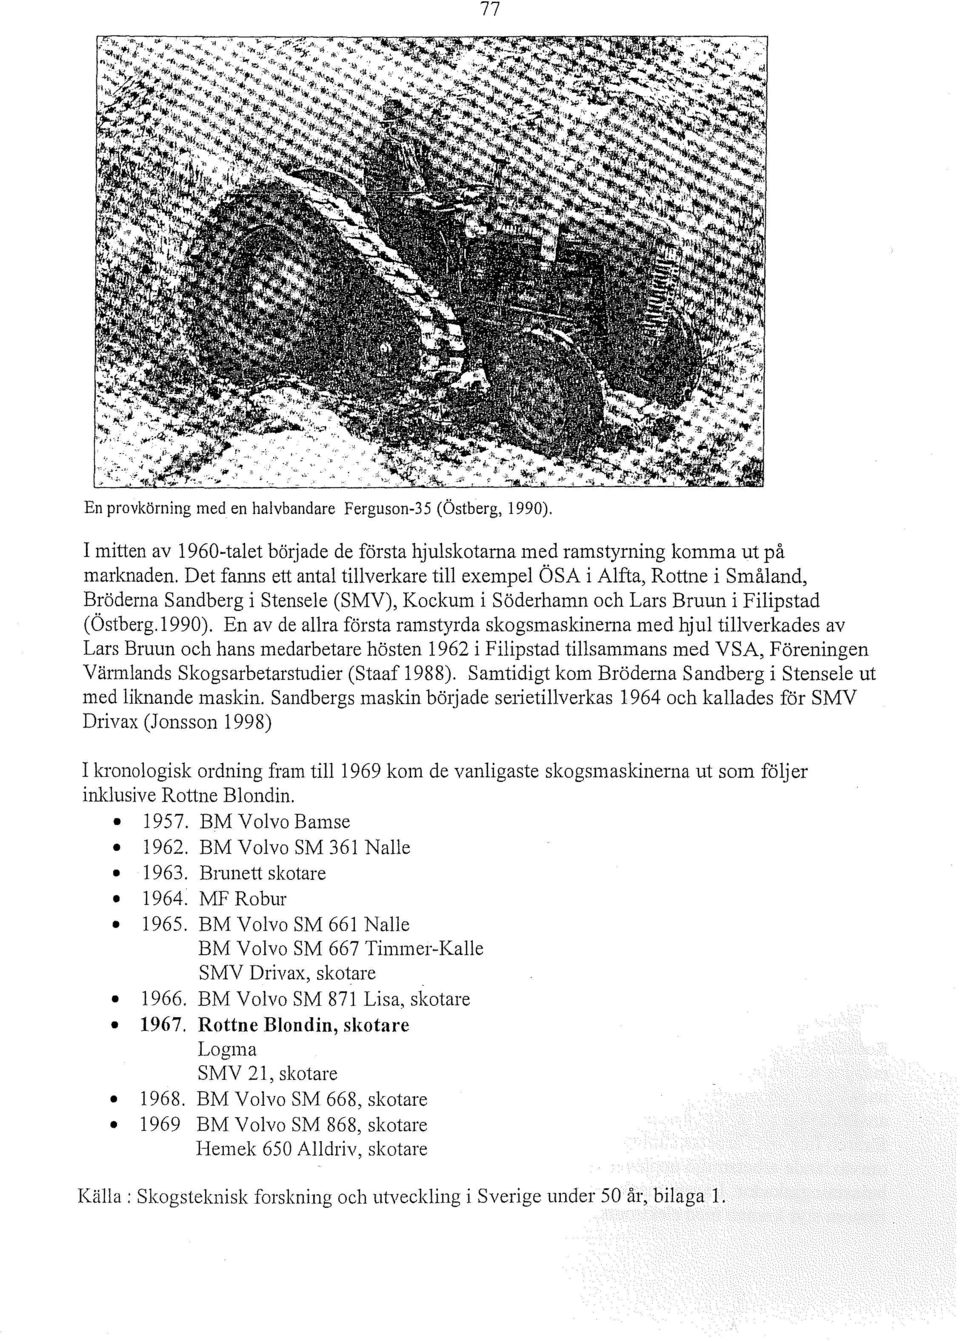 En av de allra första ramstyrda skogsmaskinerna med hjul tillverkades av Lars Bruun och hans medarbetare hösten 1962 i Filipstad tillsammans med VSA, Föreningen Värmlands Skogsarbetarstudier (Staaf